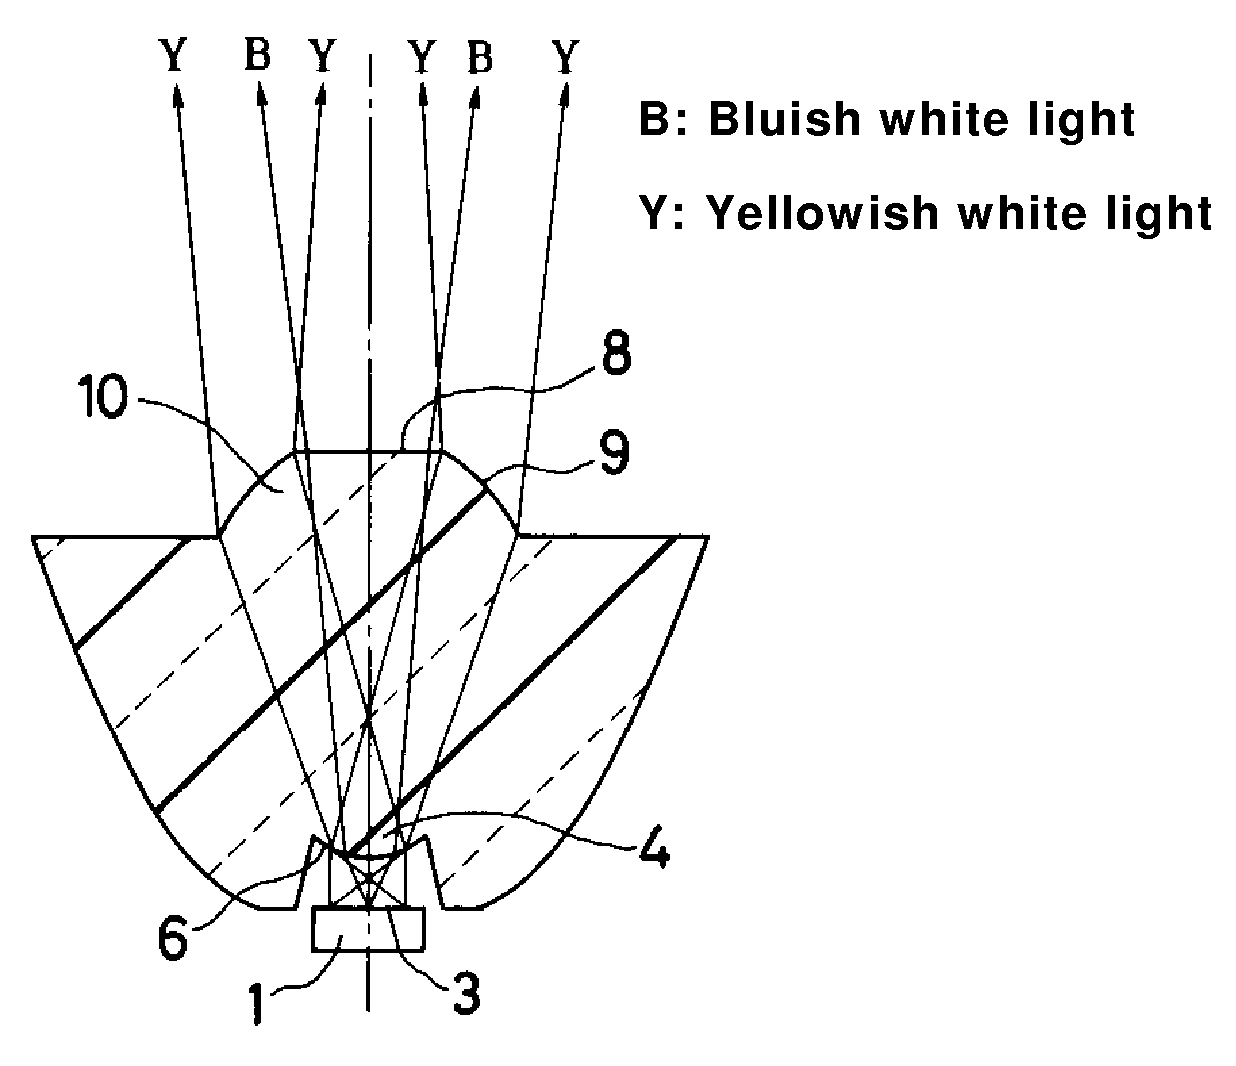 White LED illumination device